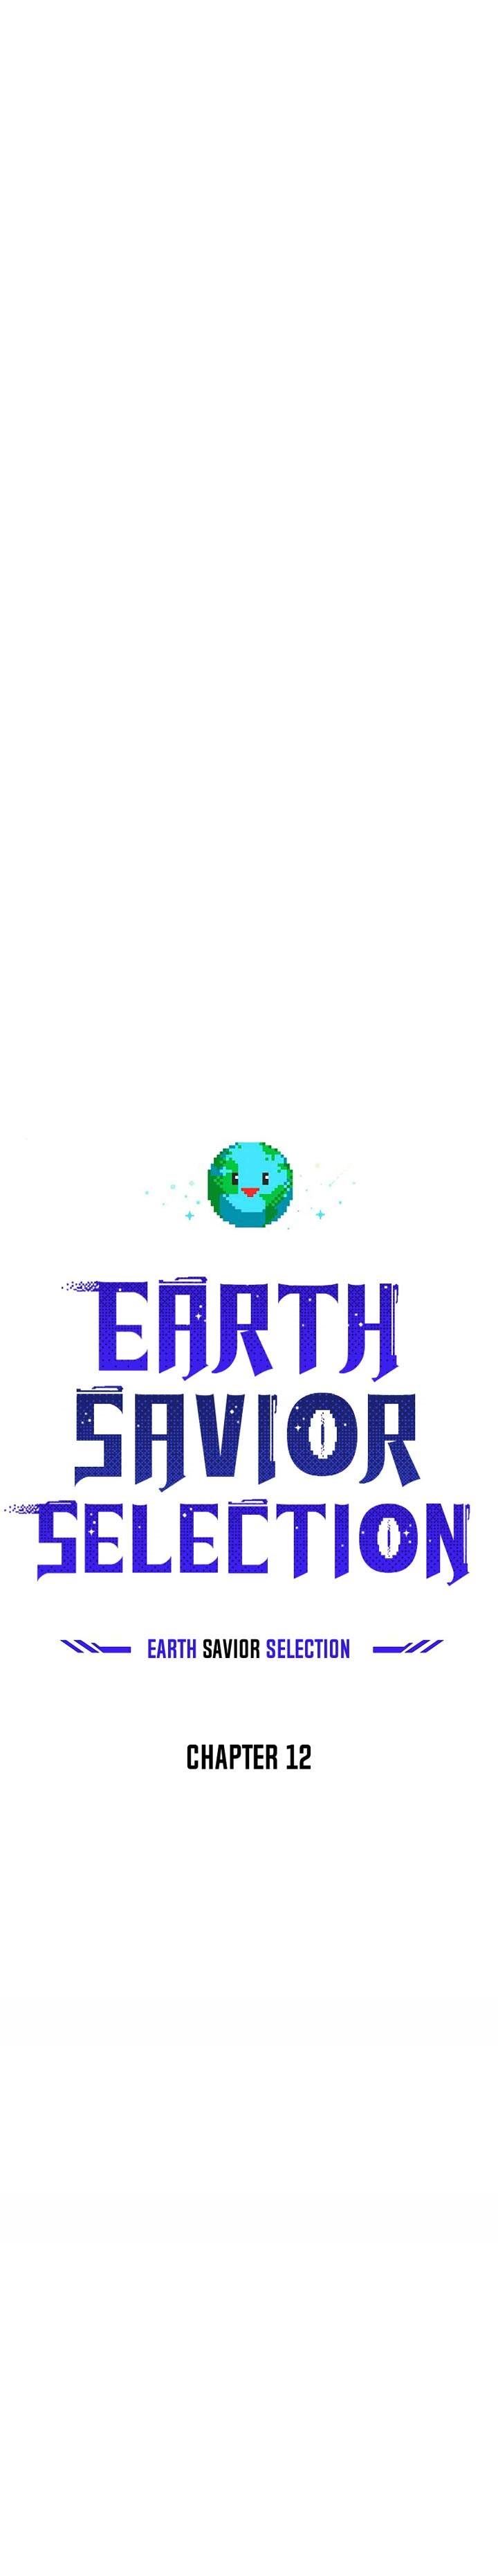 The Earth Savior Selection Chapter 12